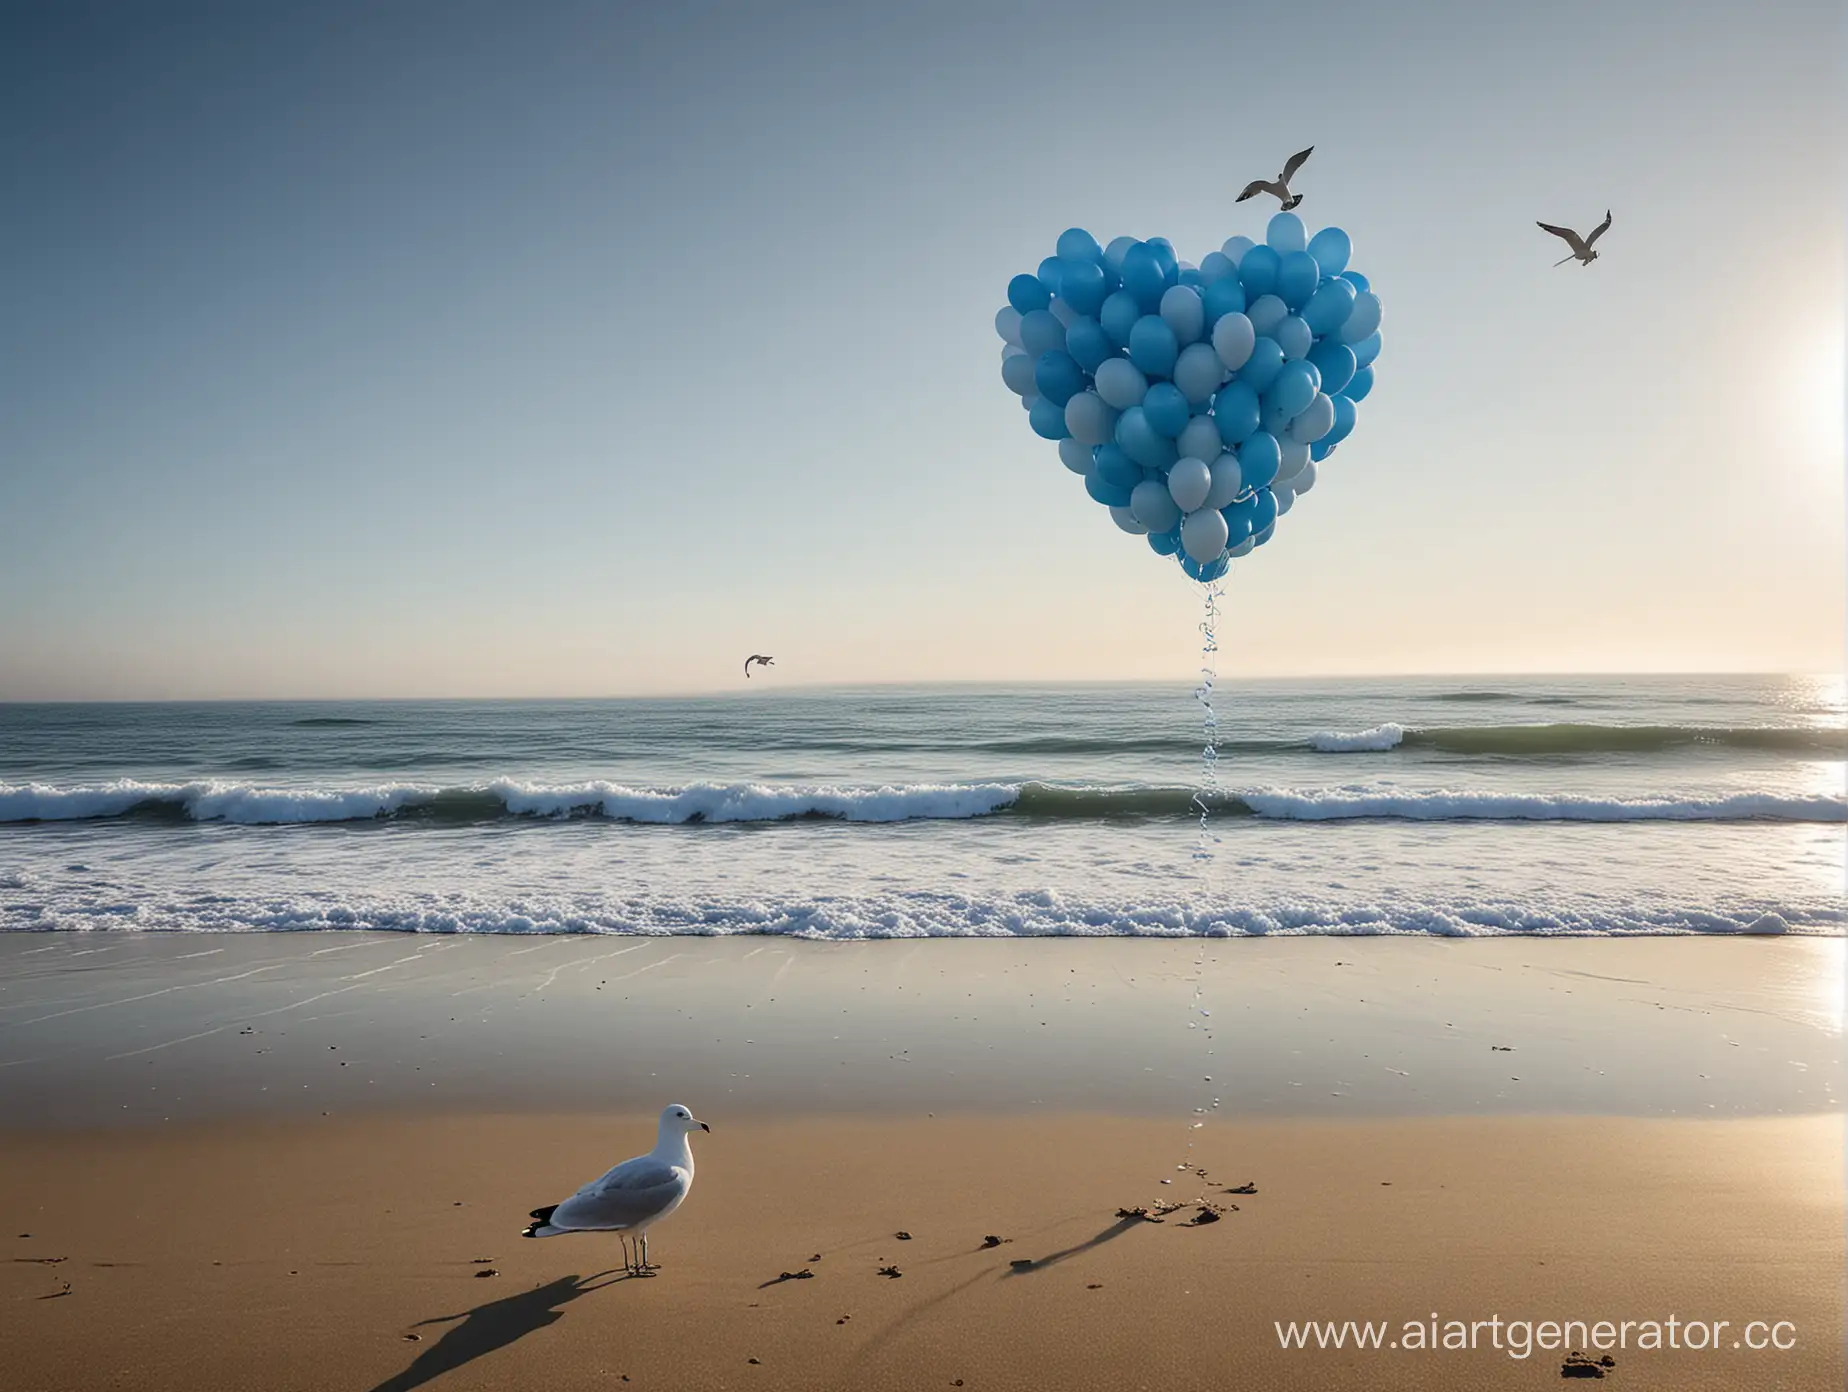 Seaside-Serenity-Balloon-Seagull-Over-HeartShaped-Balloon-Structure